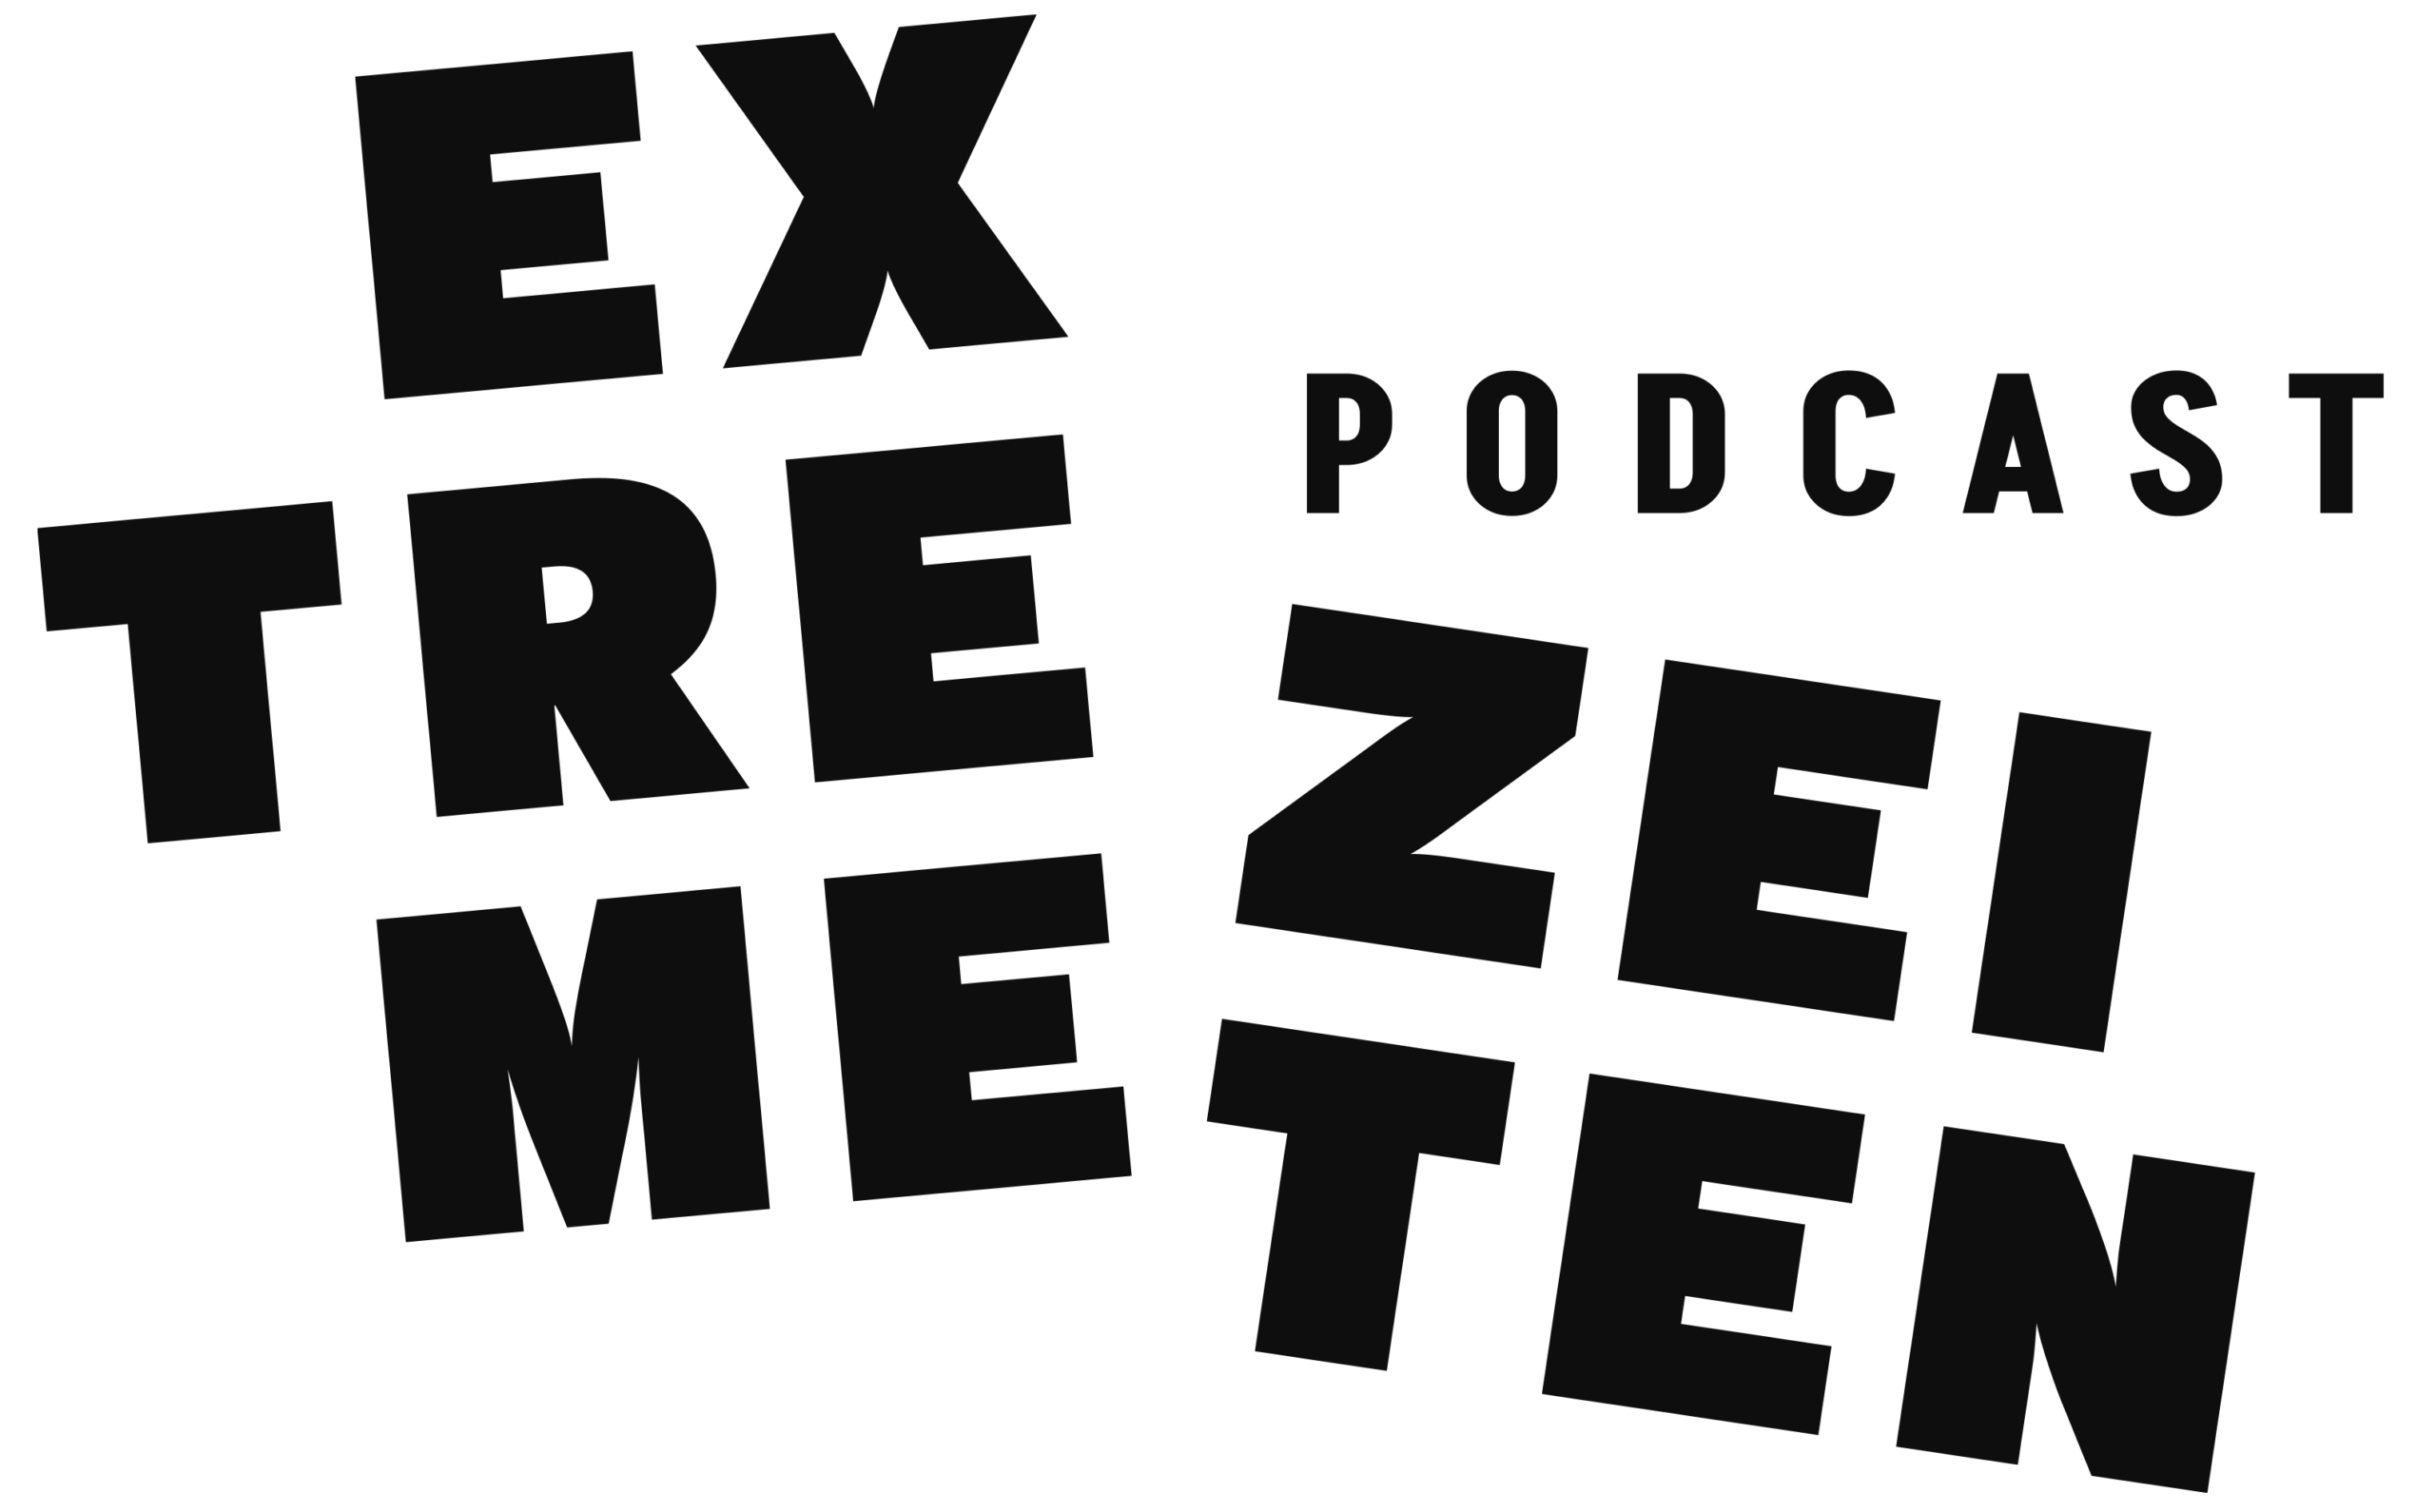 Auf dem Bild steht in schwarzer Farbe auf weißen Grund Podcast Extreme Zeiten